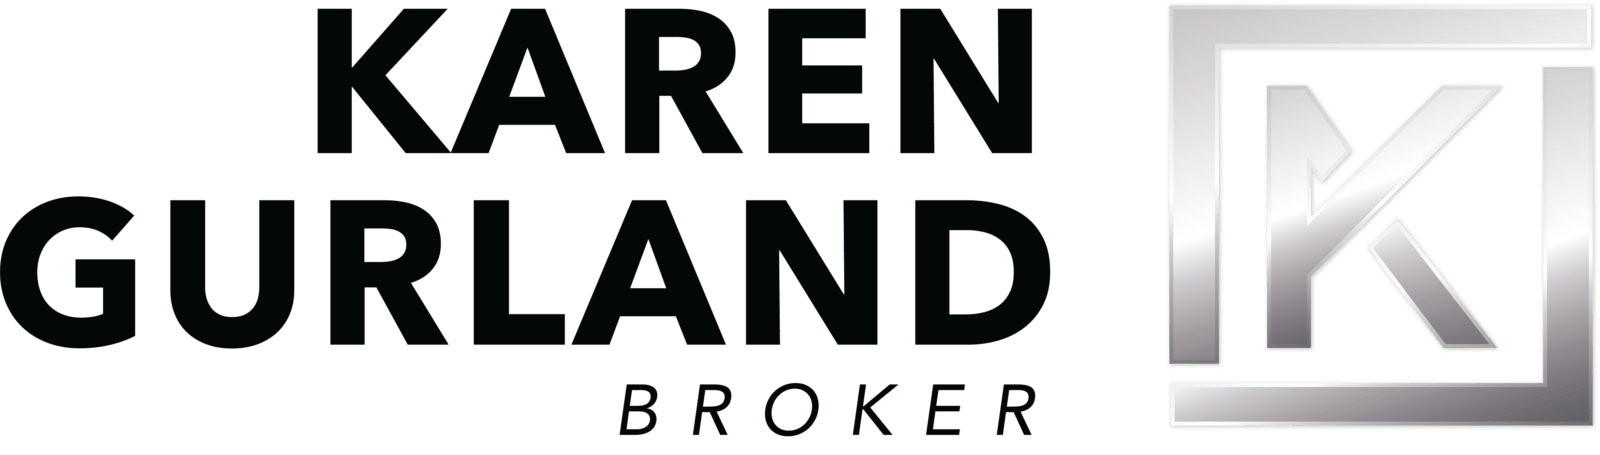 KarenGurland_Logo